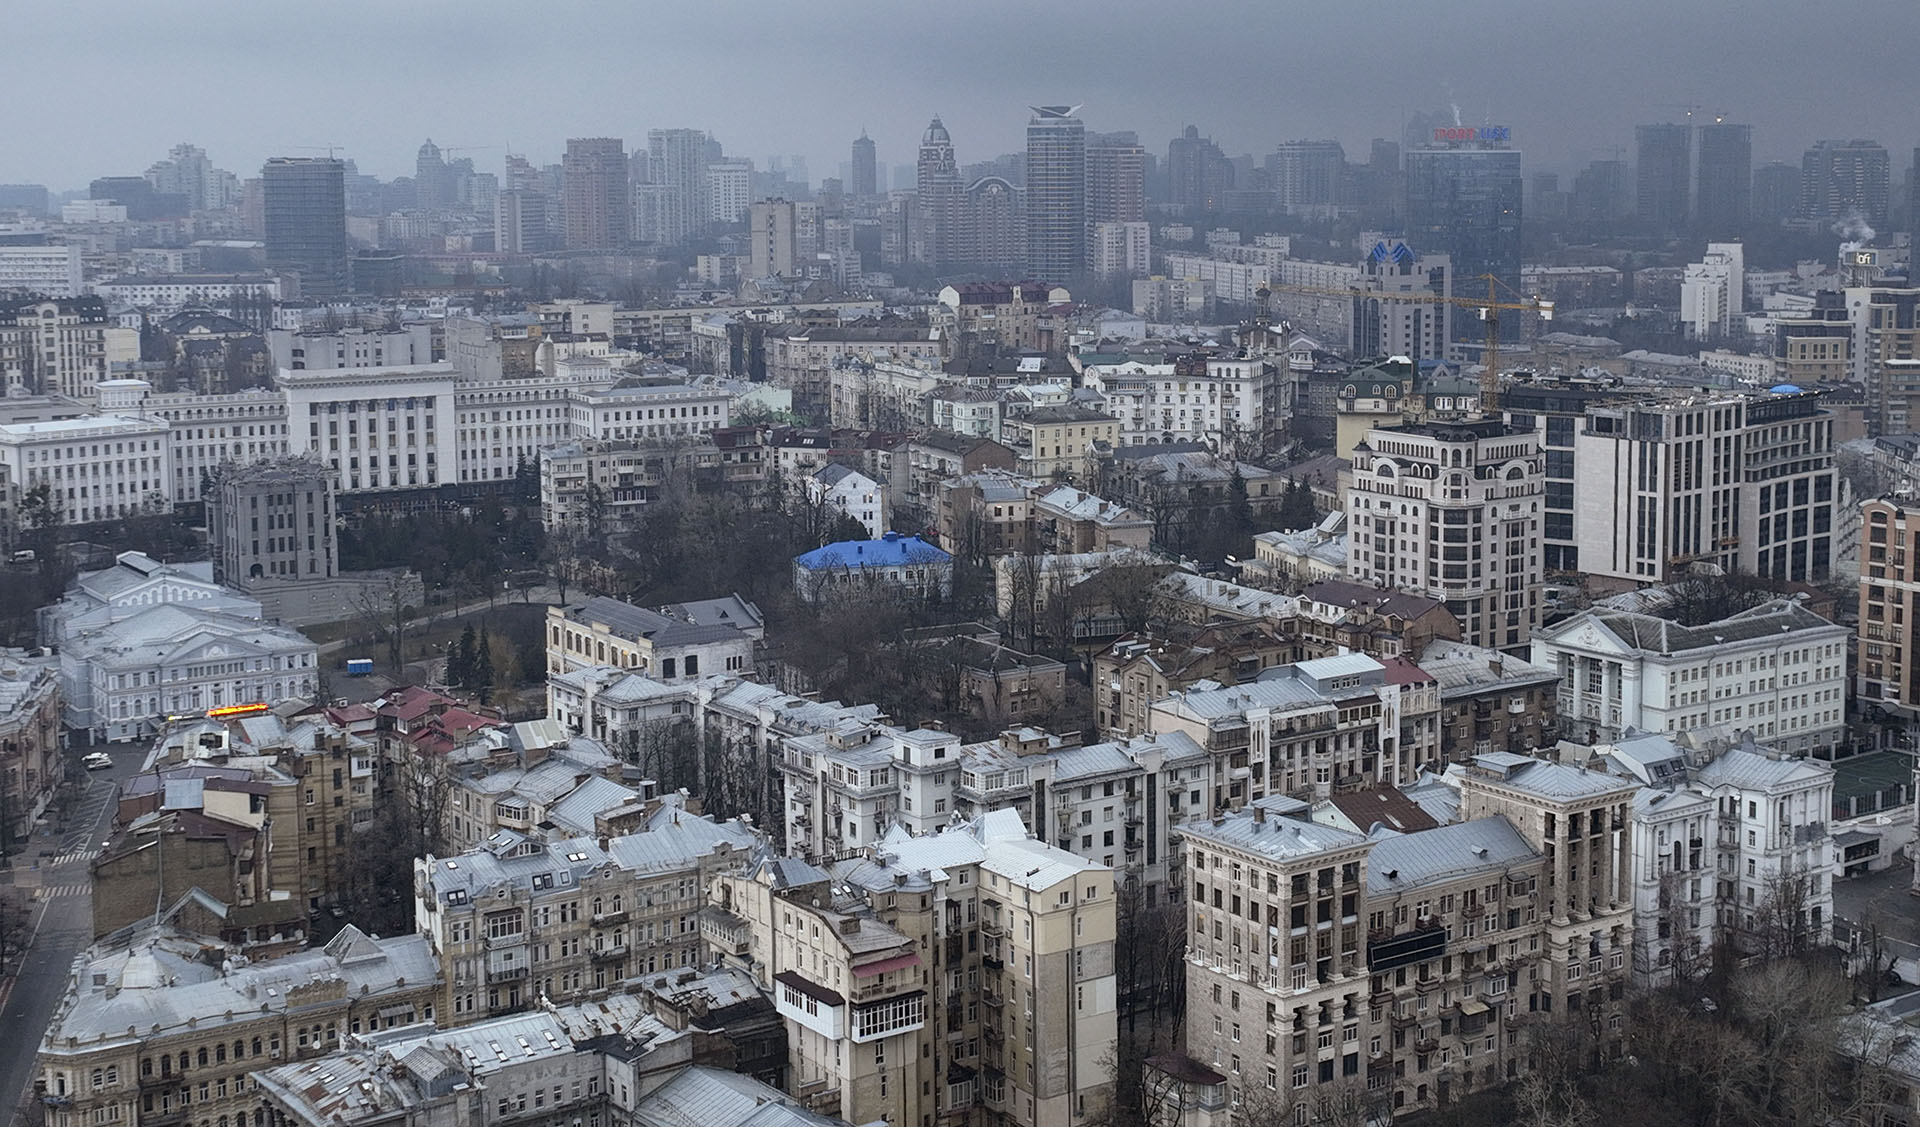 Orosz források szerint nyugat felől elzárták Kijevet